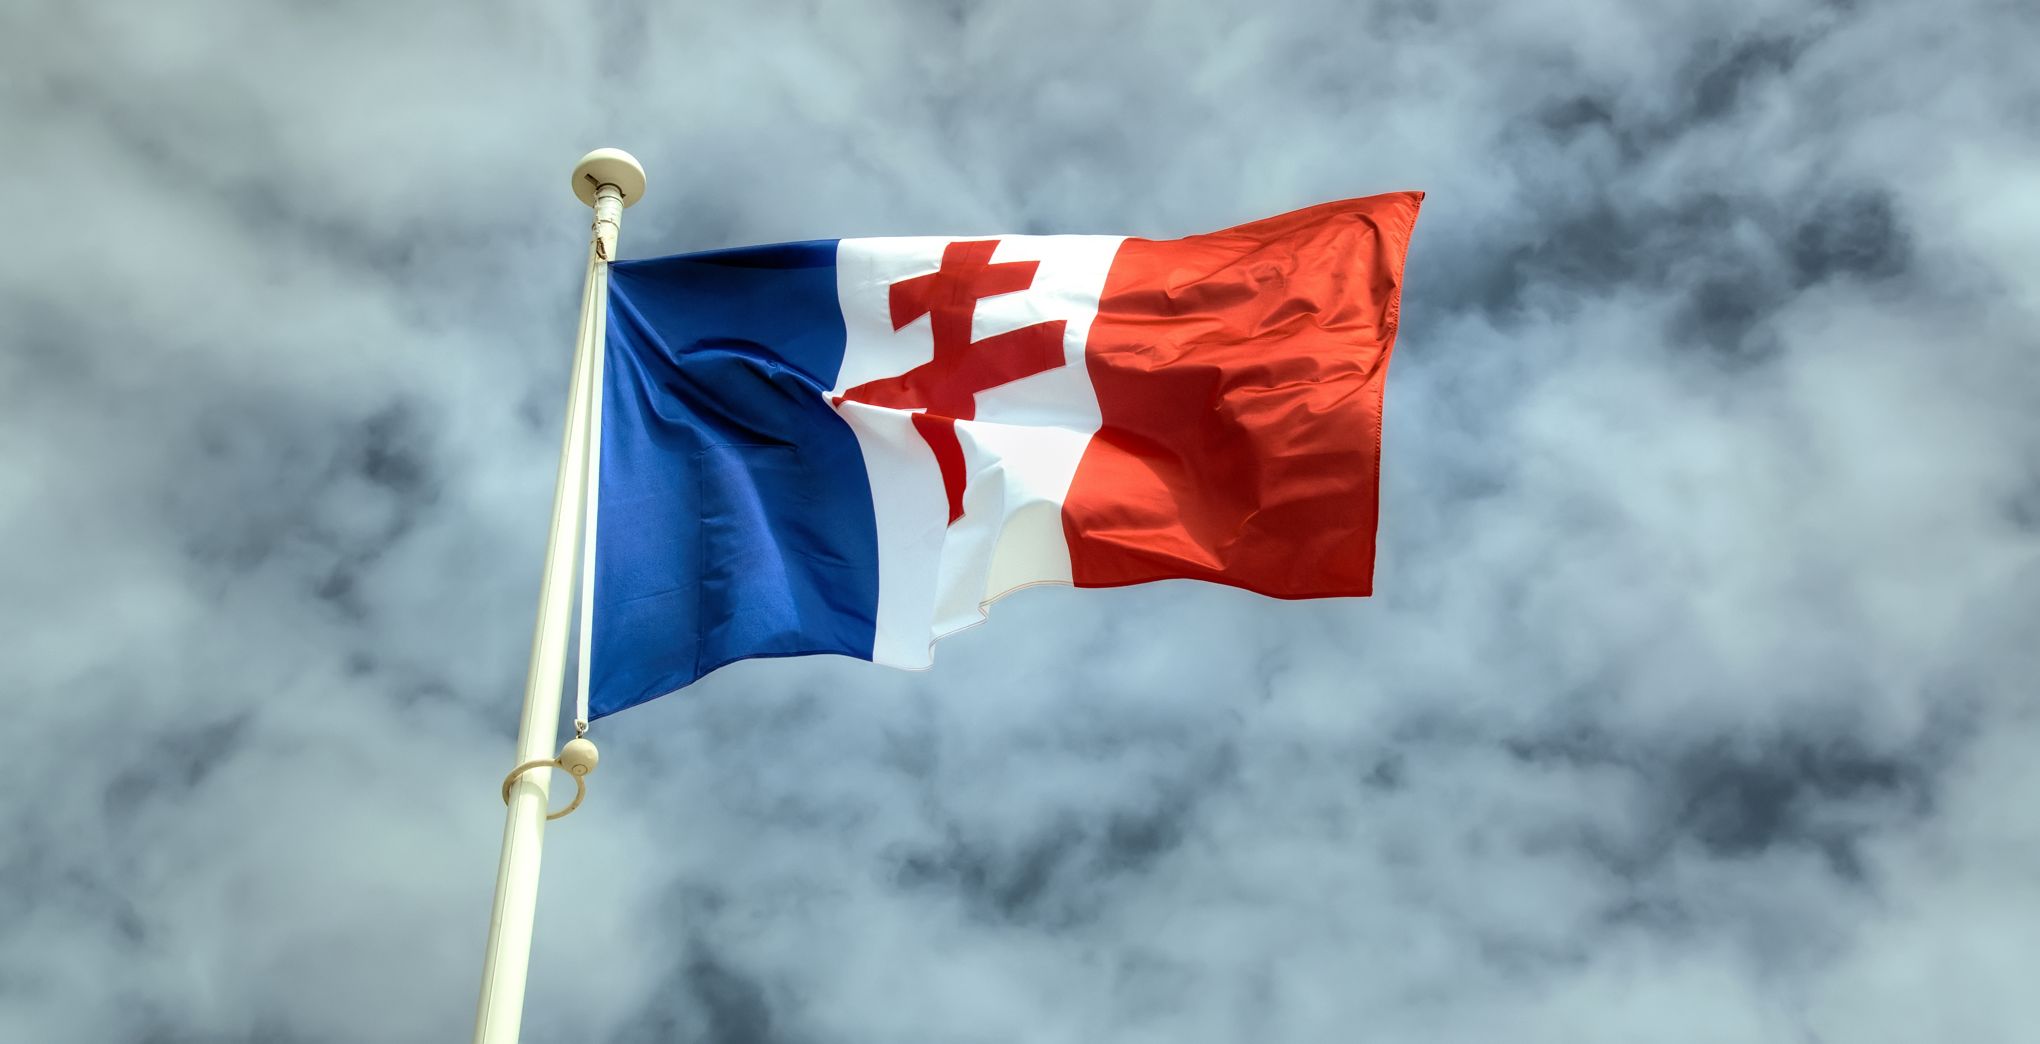 Le drapeau de la France libre est-il un trouble à l'ordre public ? - Causeur